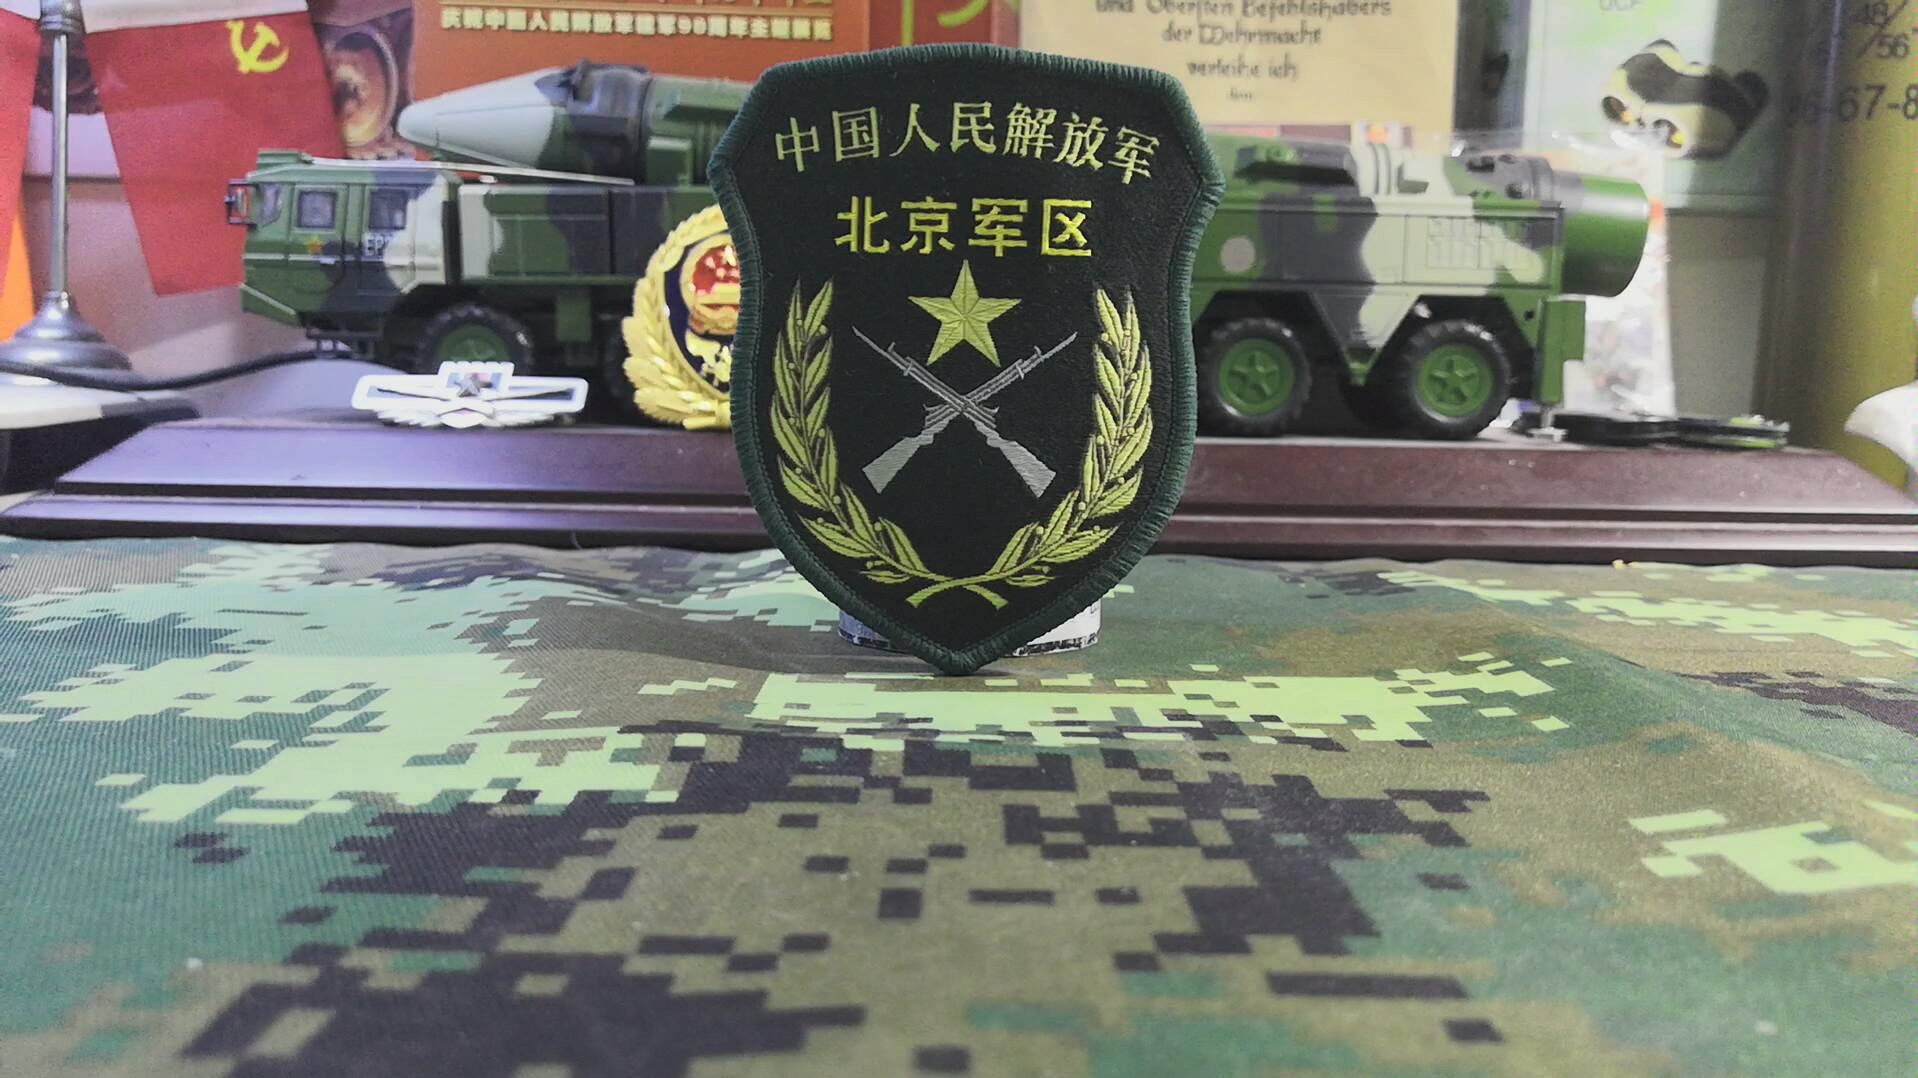 北京军区臂章高清图片图片